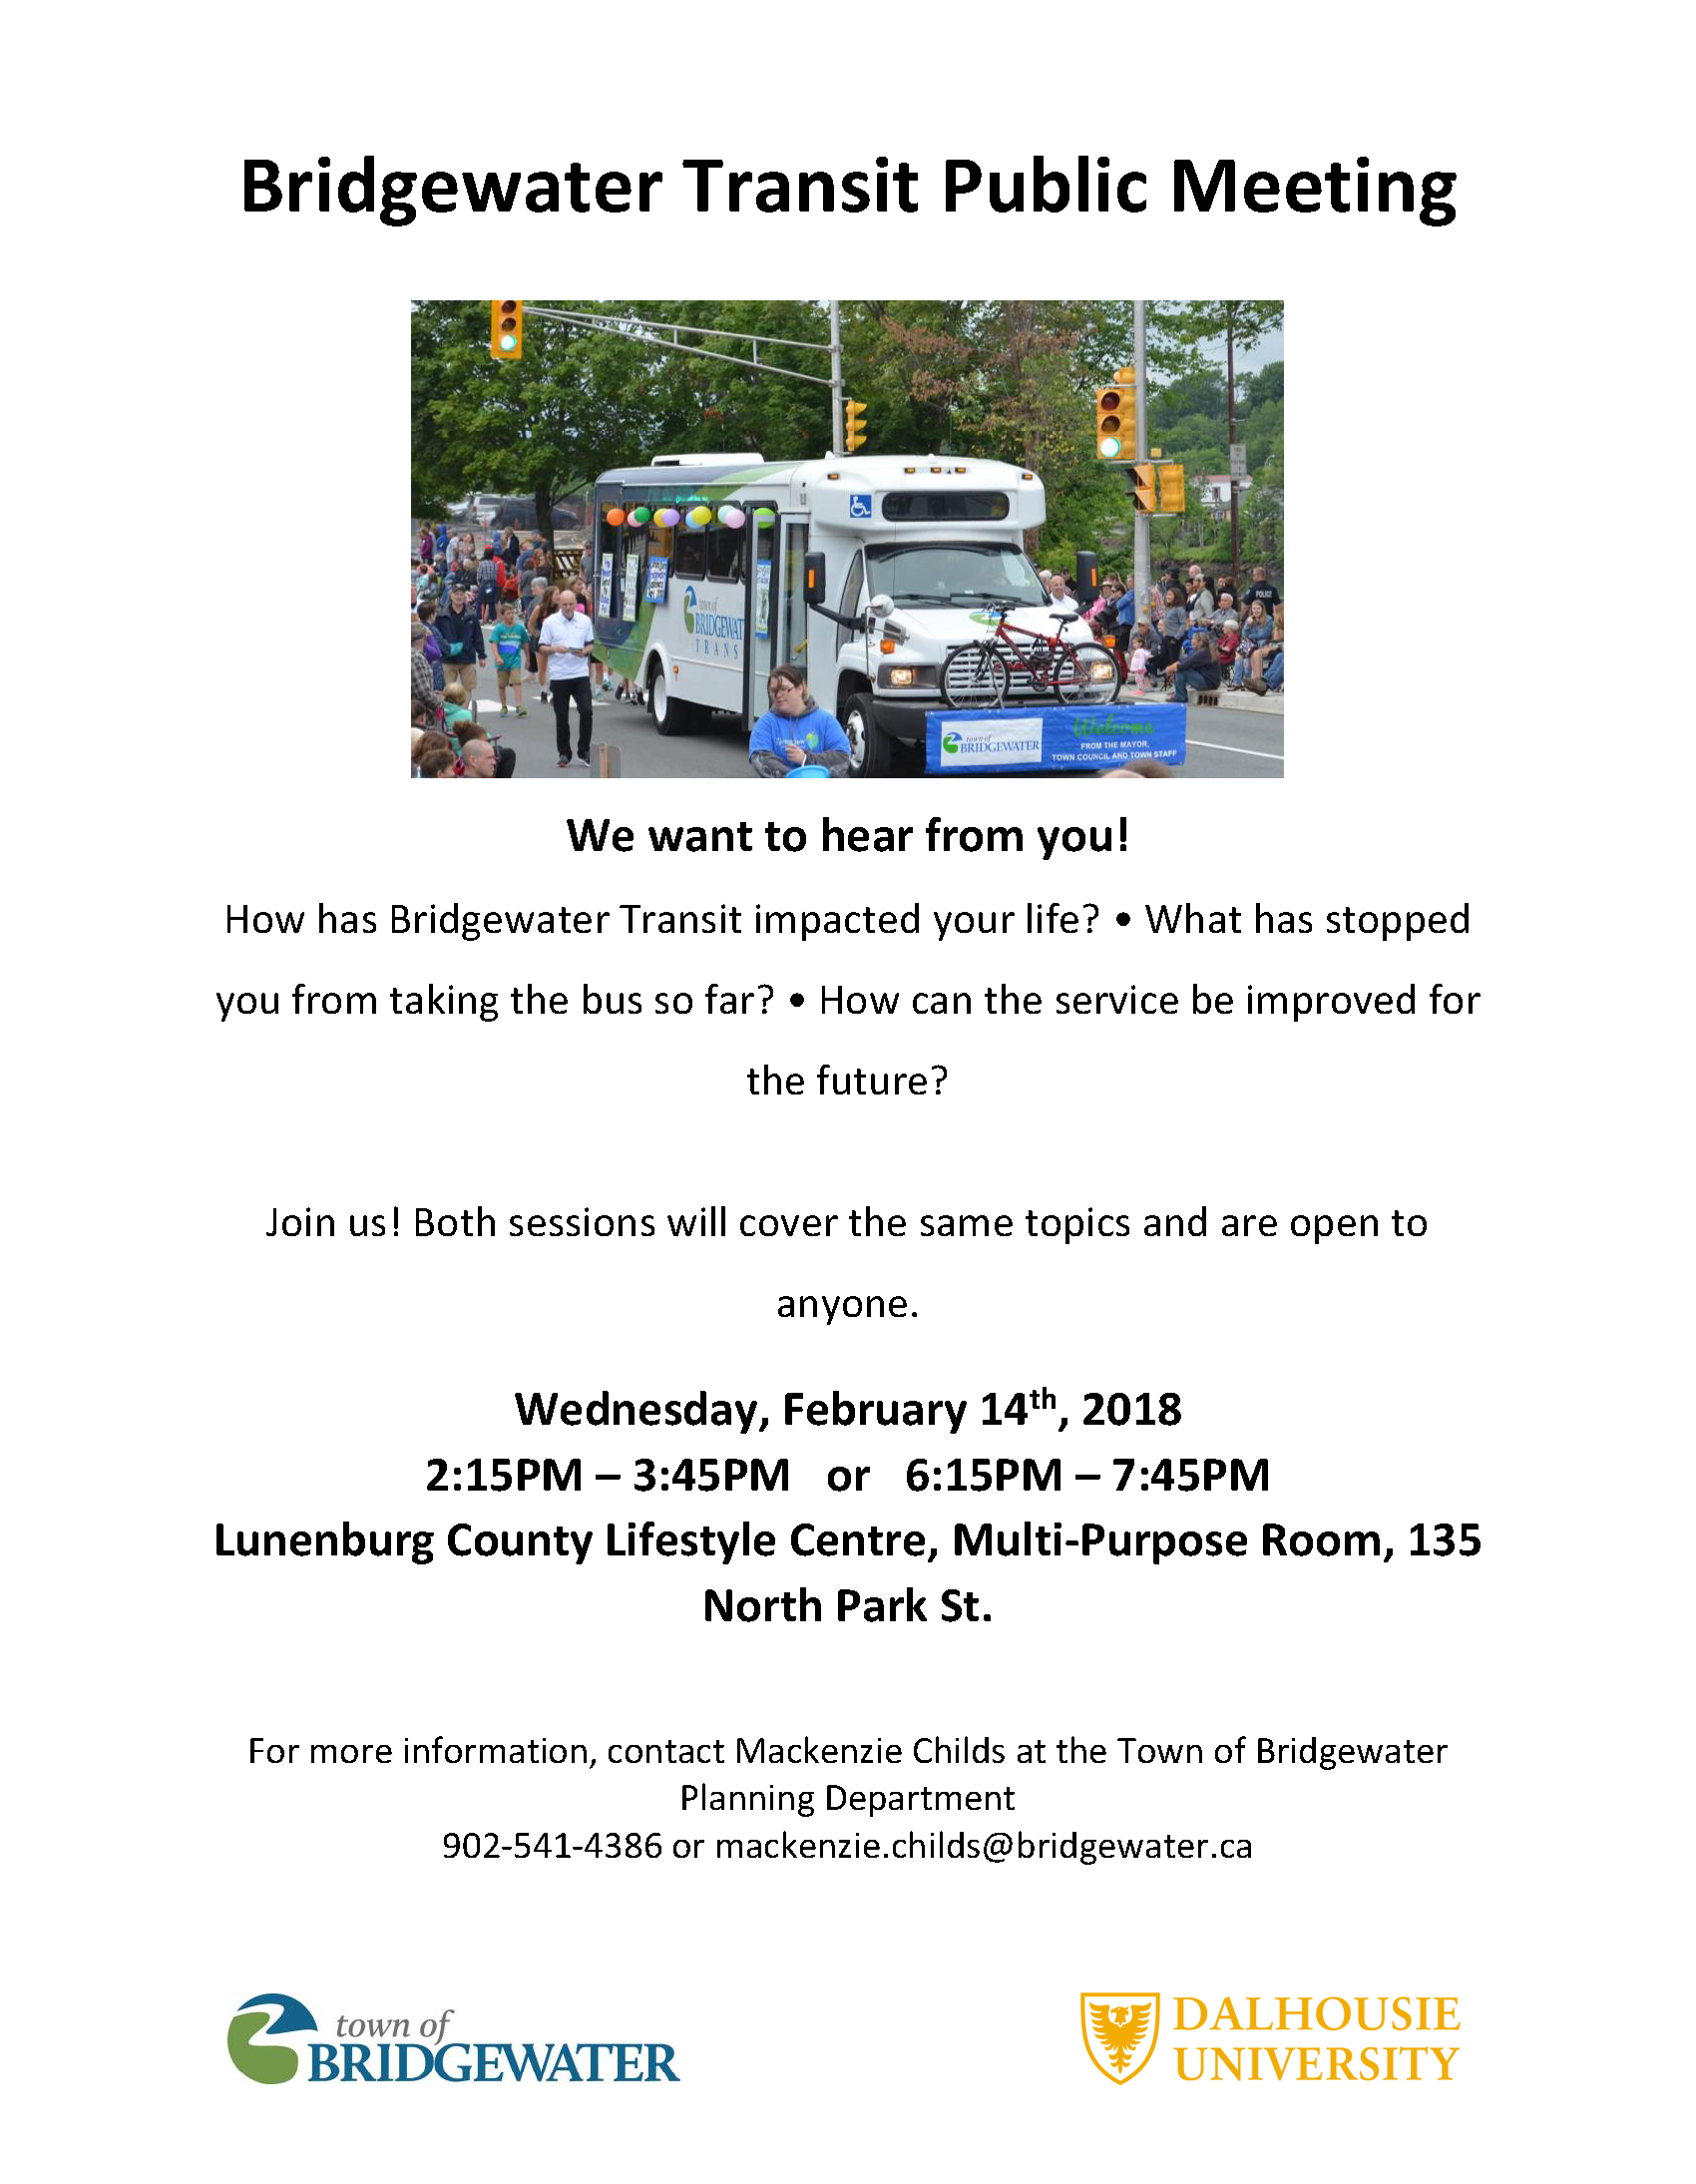 Bridgewater Transit Public Meeting poster